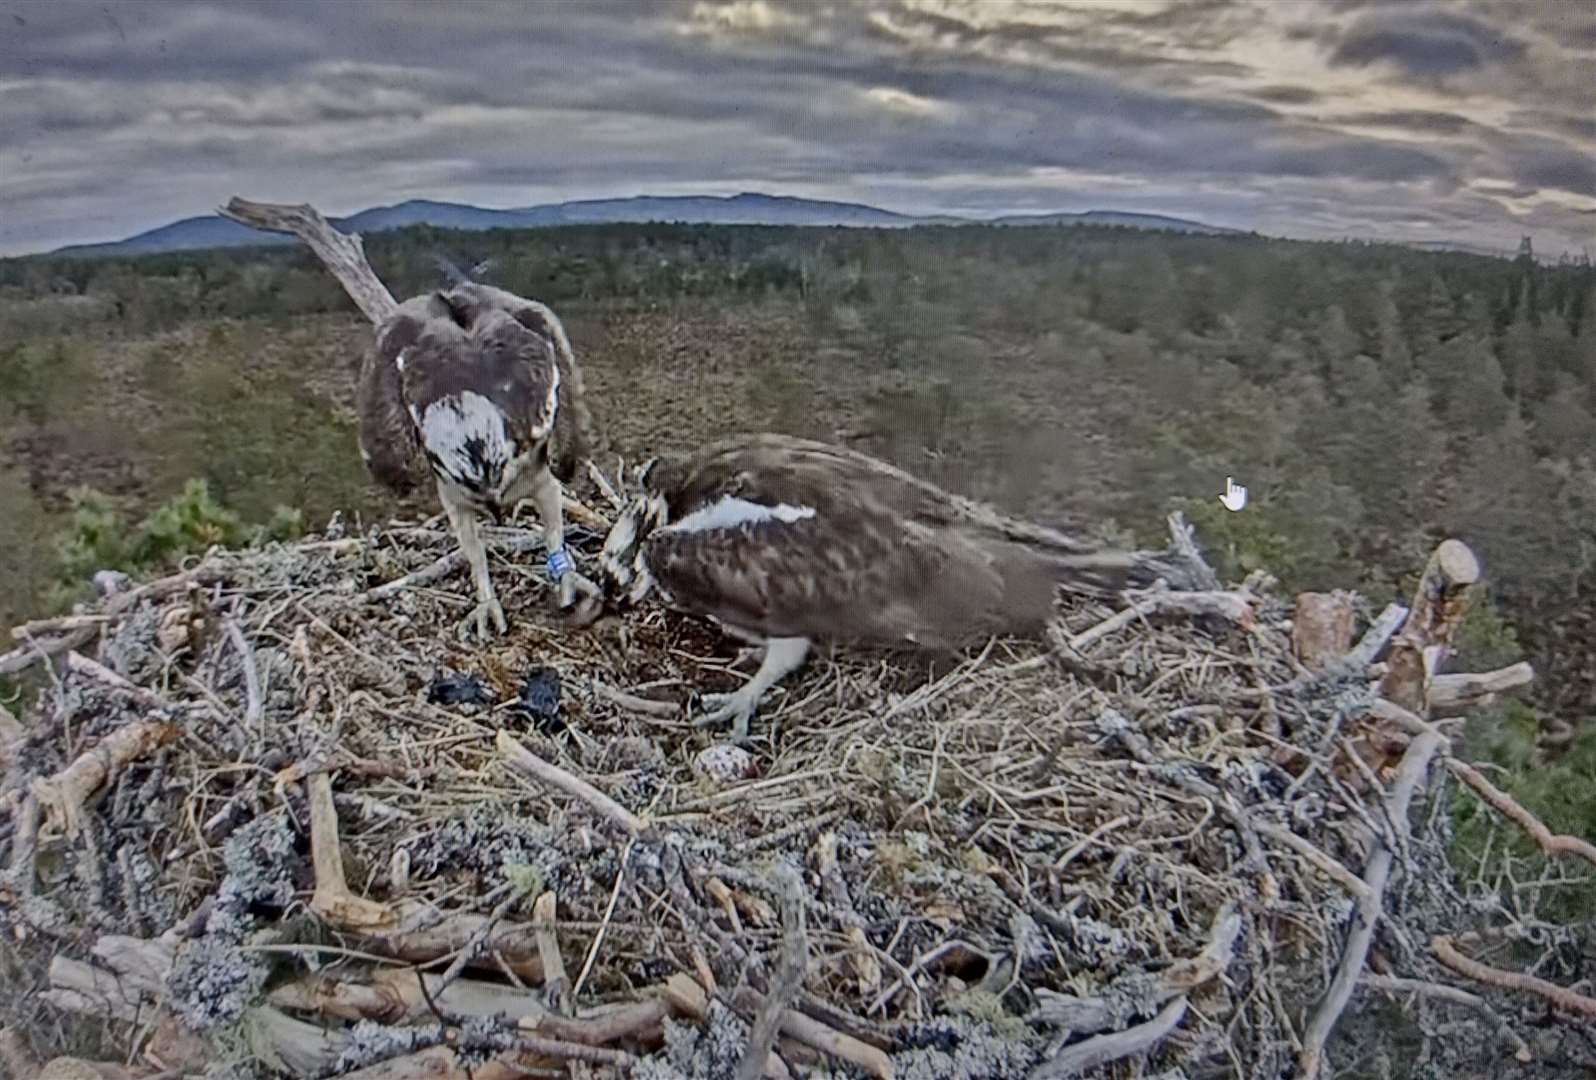 Action on the nest at Loch Garten